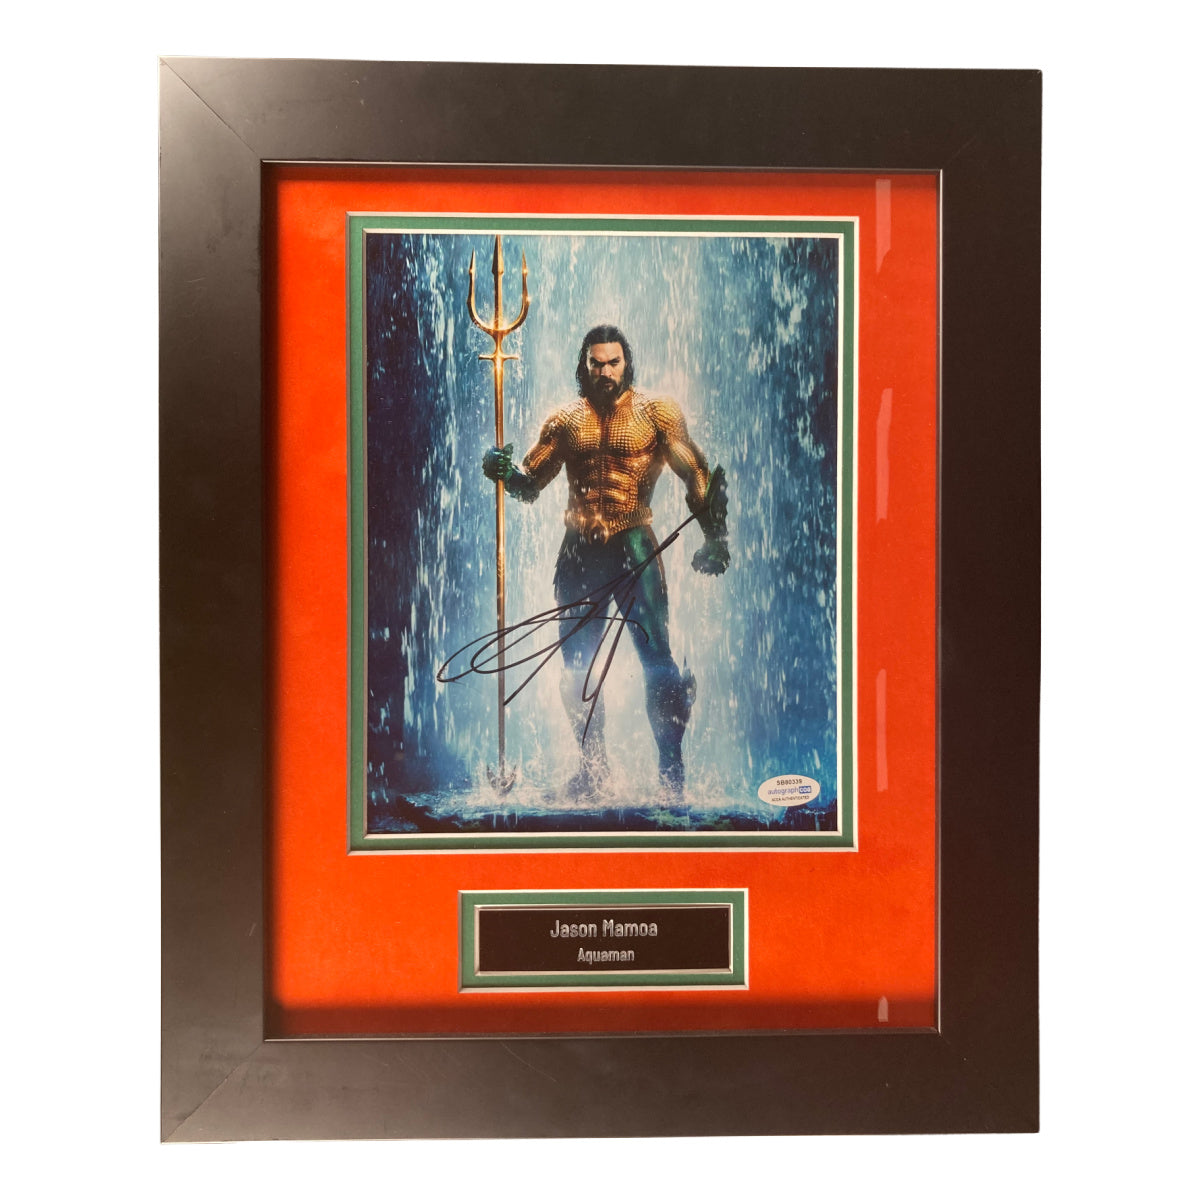 Jason Momoa Signed 8x10 Photo Aquaman Framed Autographed ACOA